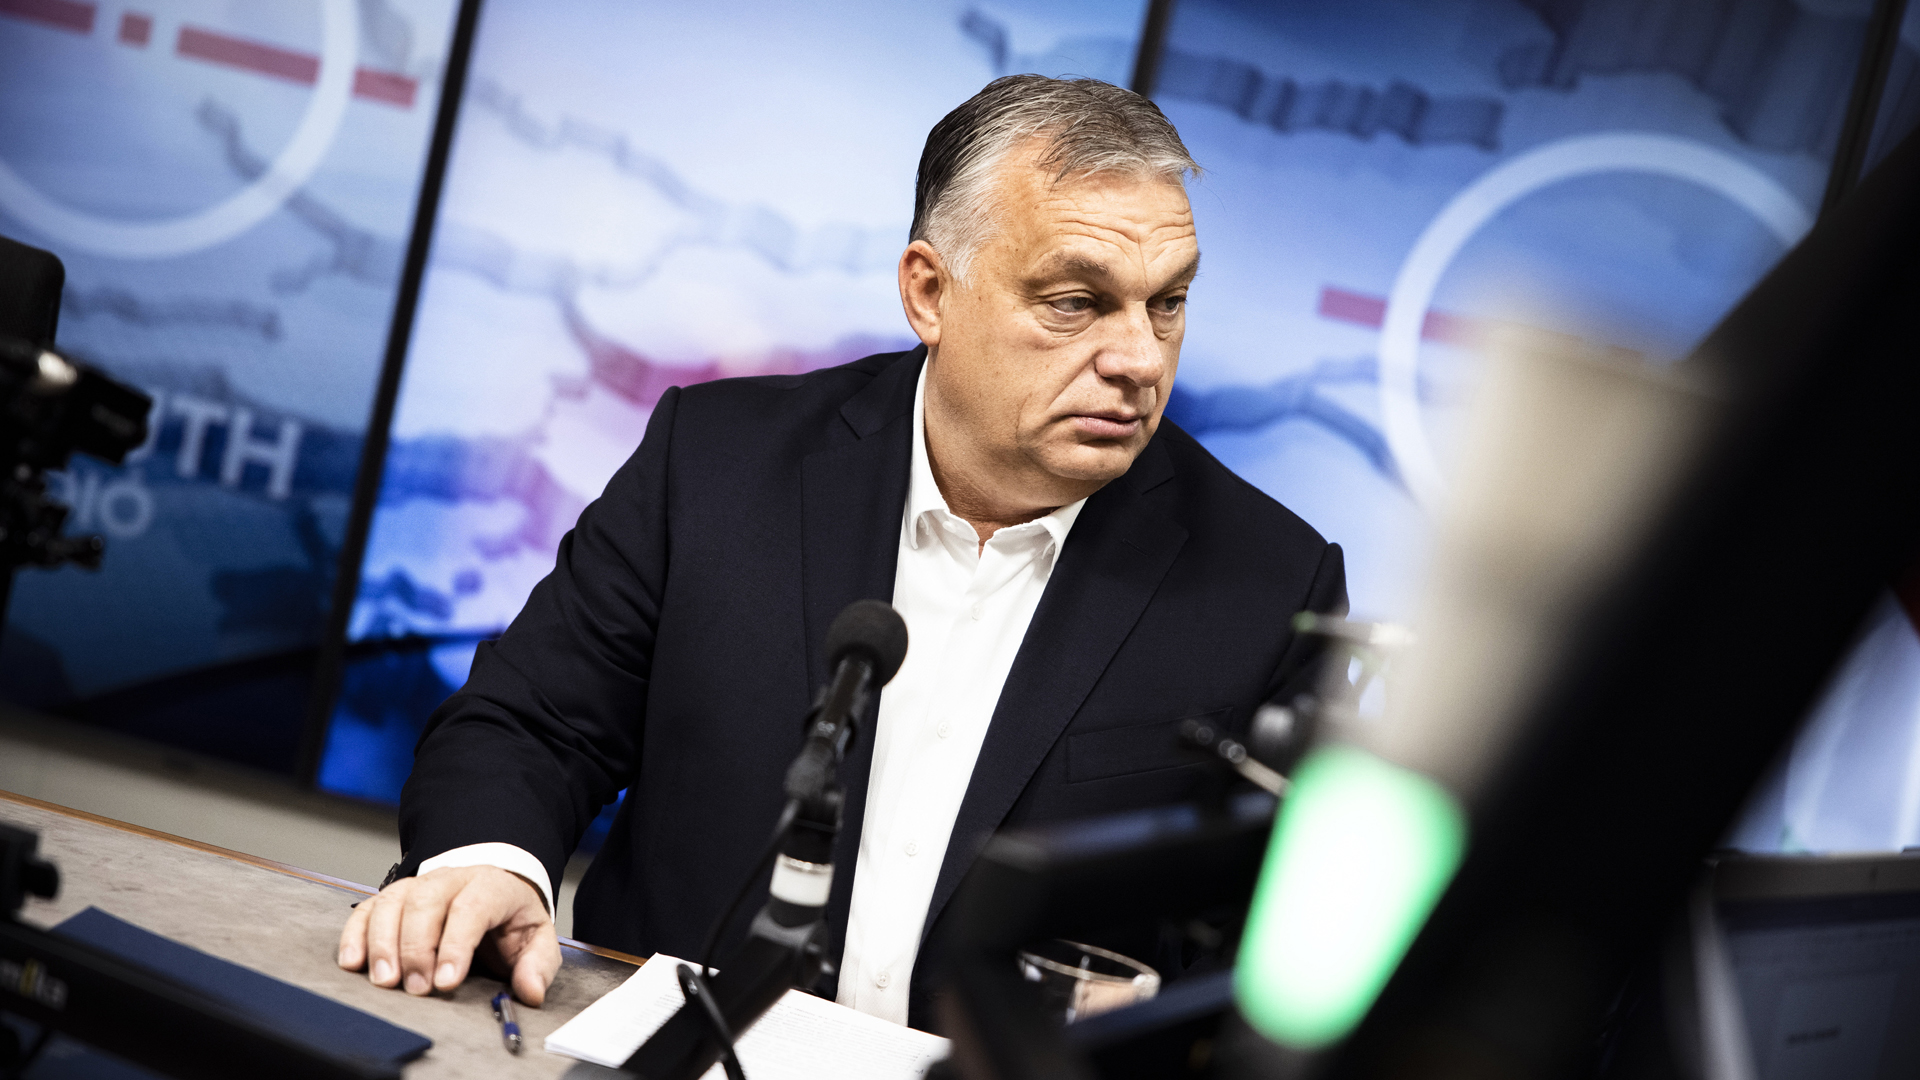 A Miniszterelnöki Sajtóiroda által közreadott képen Orbán Viktor kormányfő a Kossuth Rádió stúdiójában, ahol interjút adott a Jó reggelt, Magyarország! című műsorban 2021. november 26-án. / MTI/Miniszterelnöki Sajtóiroda/Fischer Zoltán